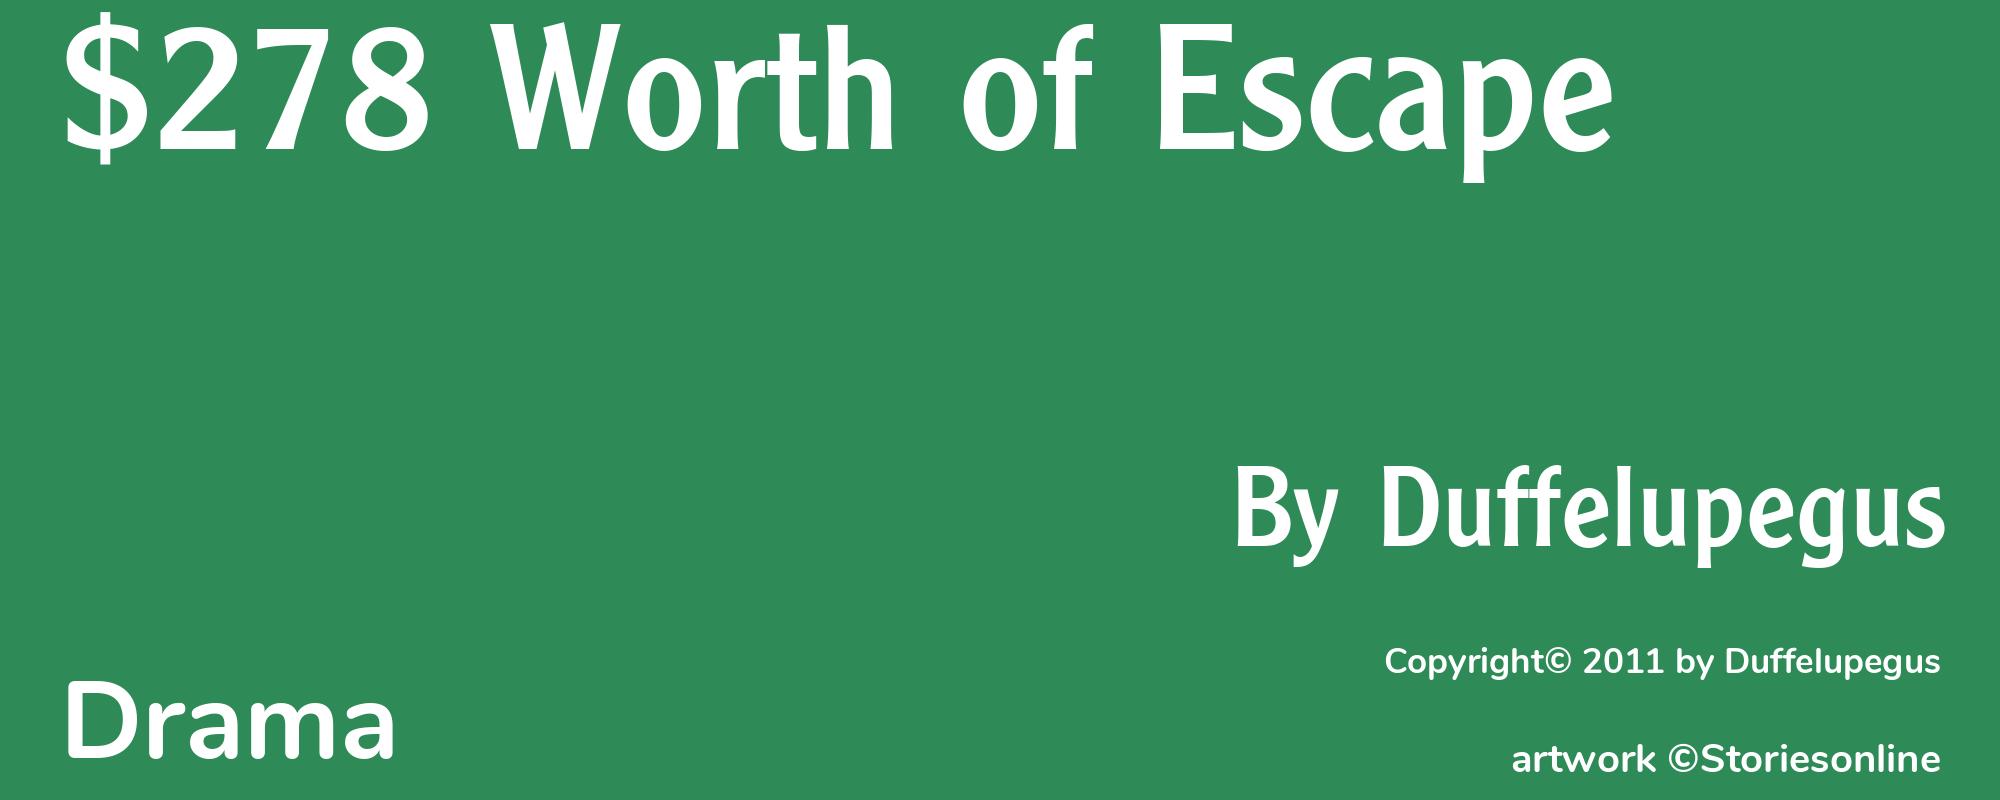 $278 Worth of Escape - Cover